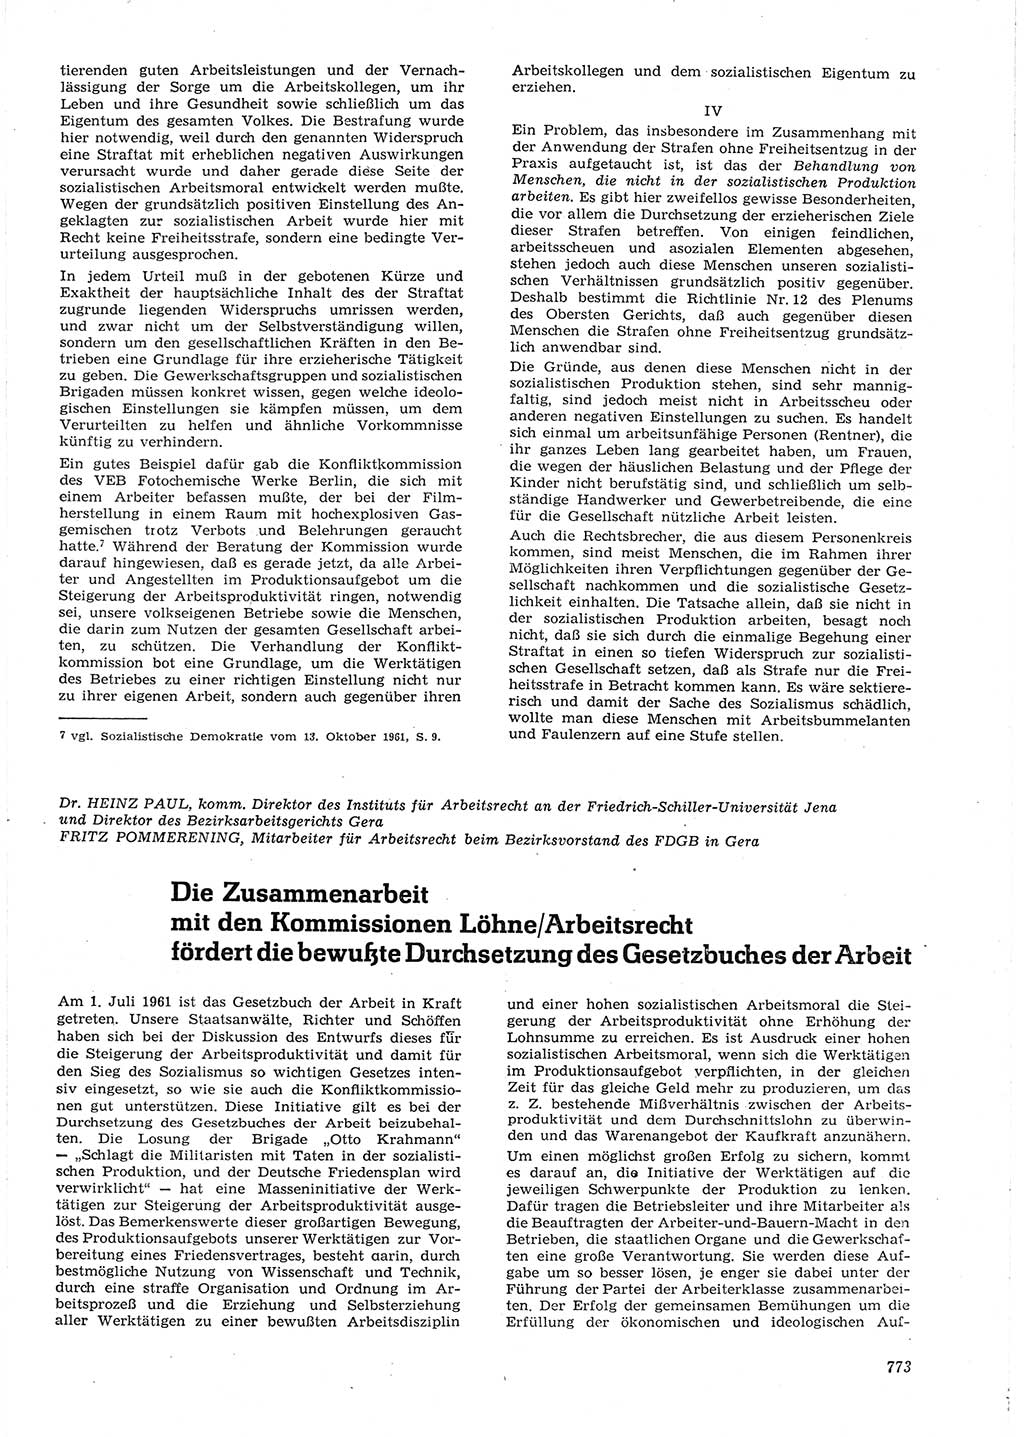 Neue Justiz (NJ), Zeitschrift für Recht und Rechtswissenschaft [Deutsche Demokratische Republik (DDR)], 15. Jahrgang 1961, Seite 773 (NJ DDR 1961, S. 773)